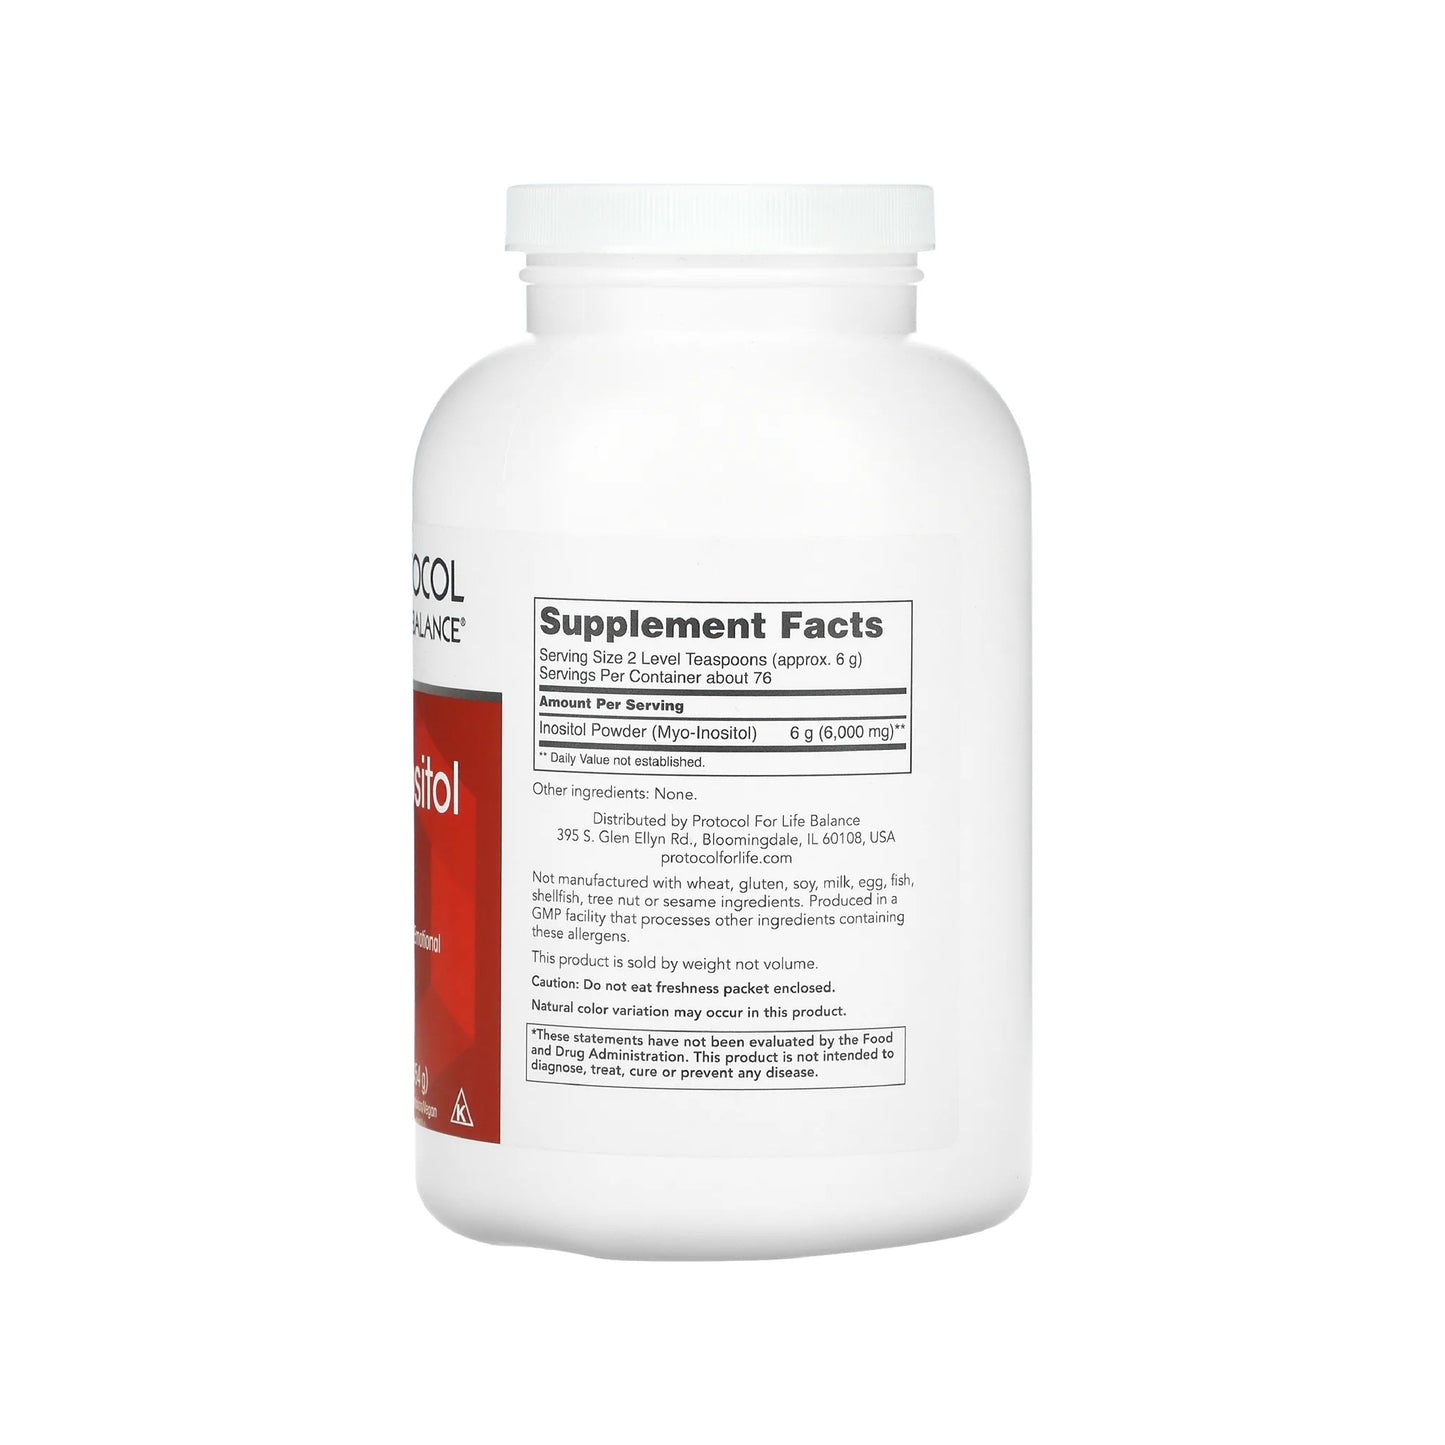 Protocol for Life Balance, Myo-Inositol Powder, 1 lb (454 g)